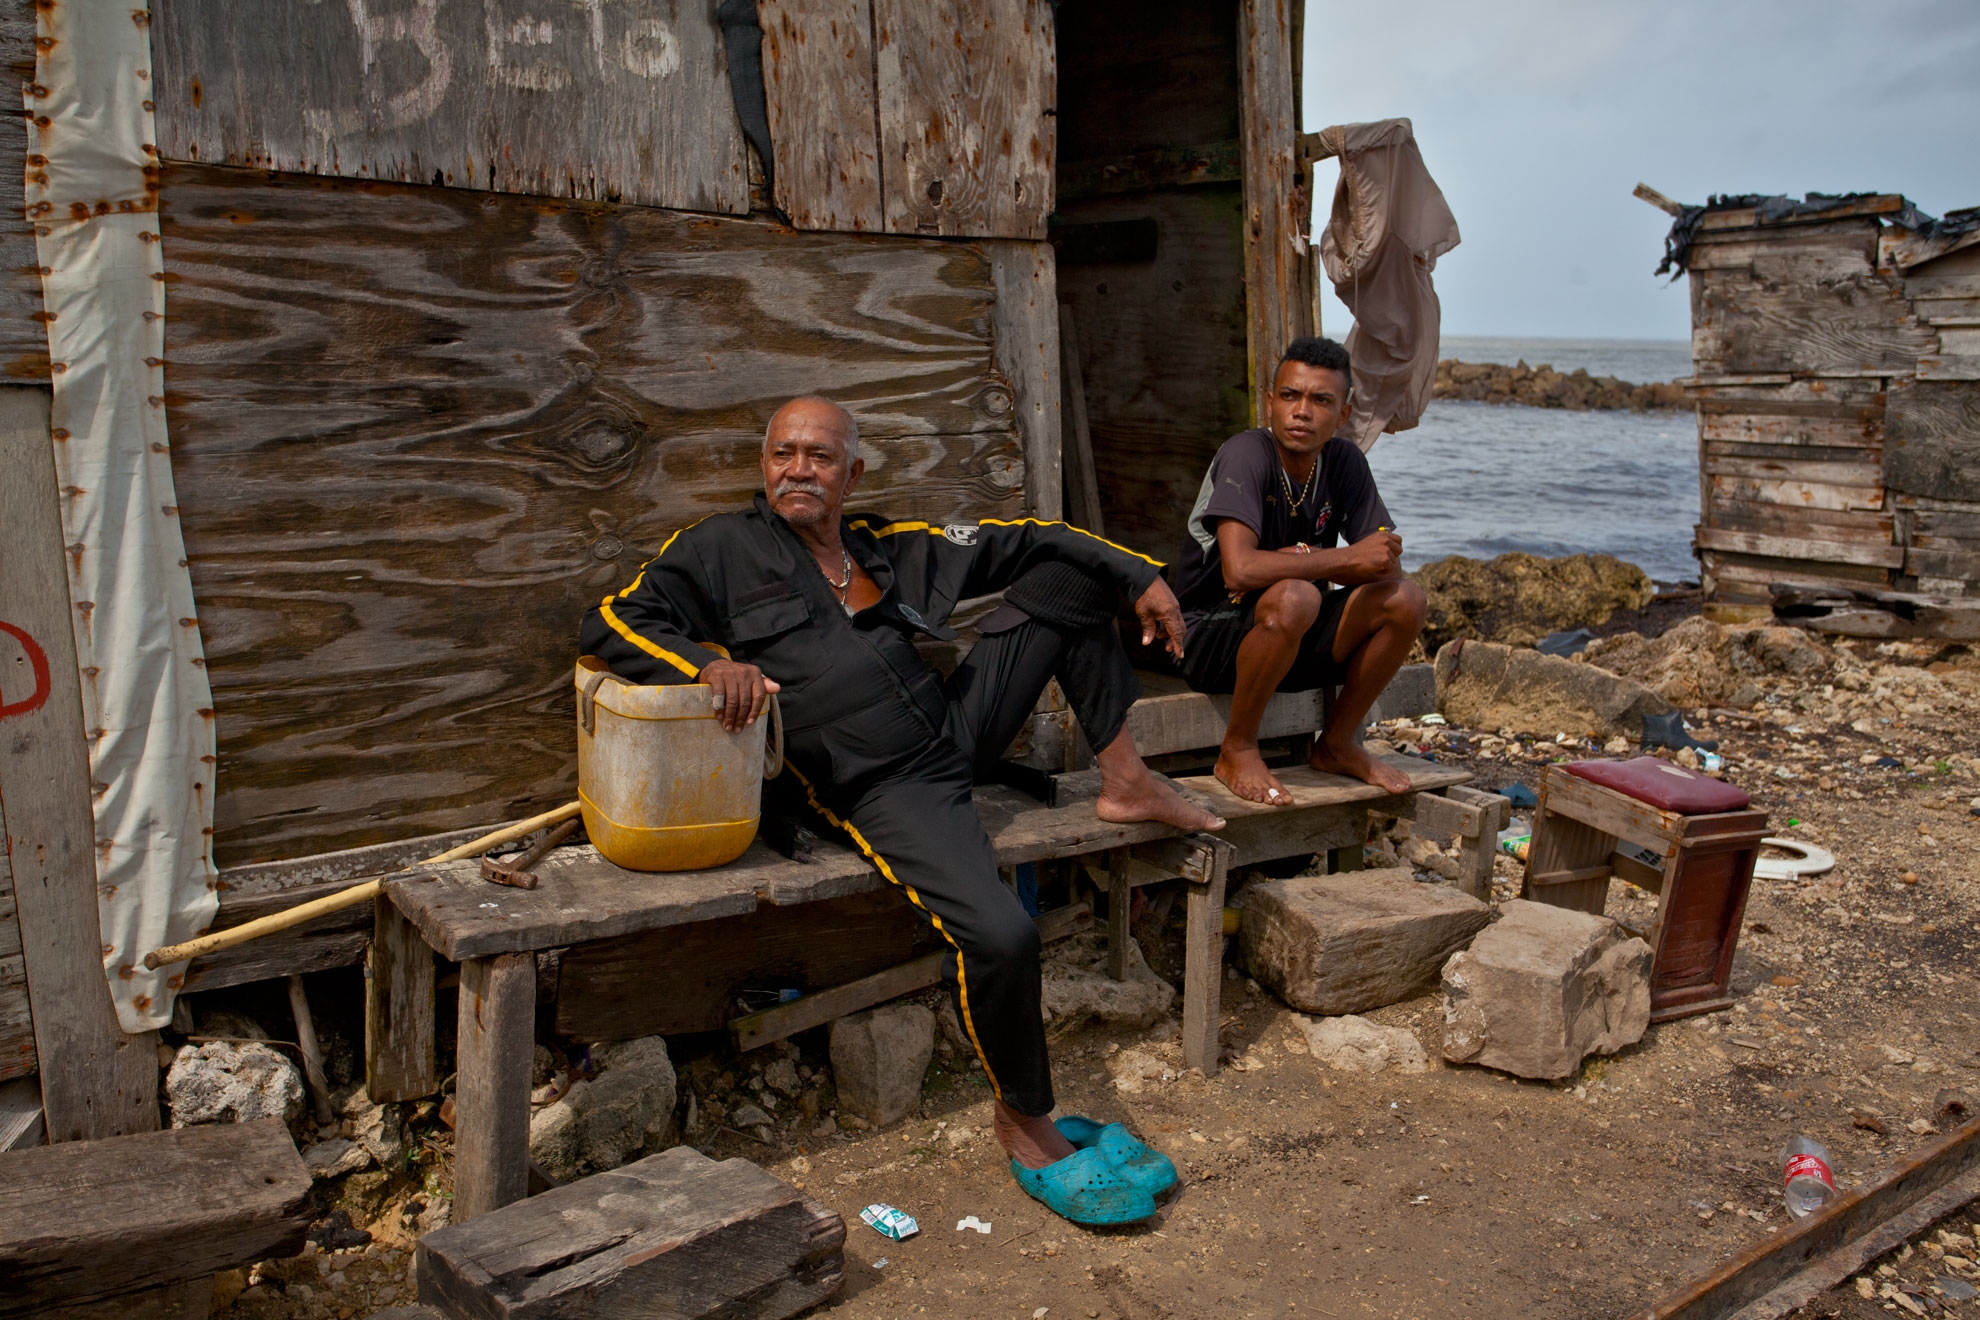 The forgotten fishermen - 